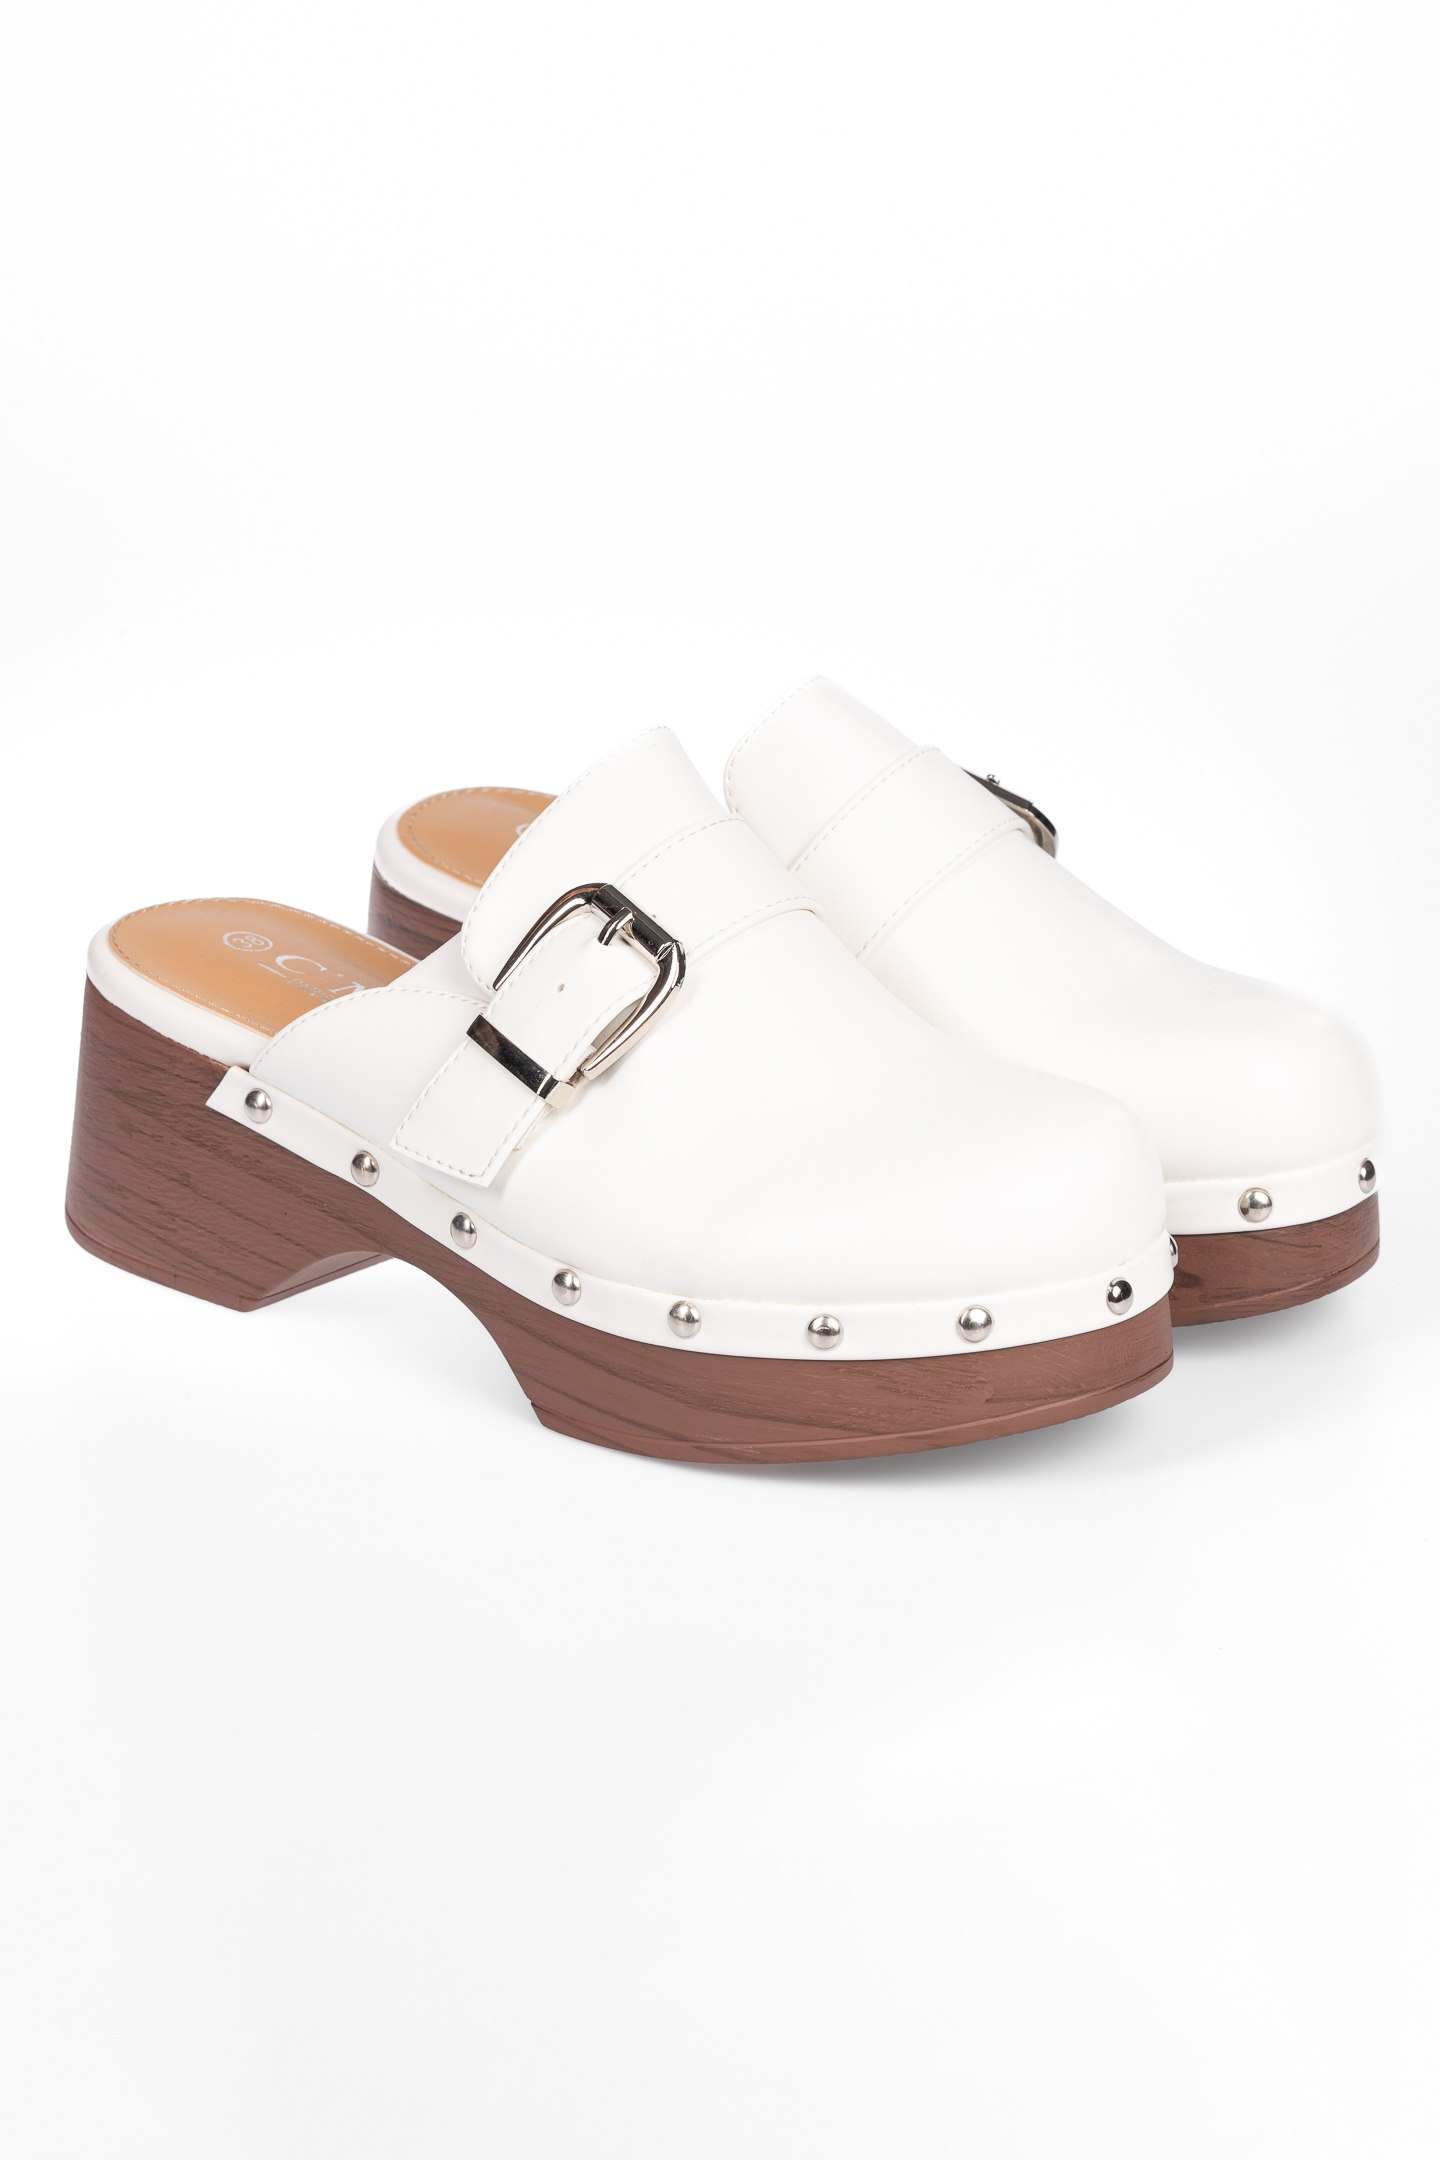 Παπούτσια > Clogs / Τσόκαρα Τσόκαρα με μεταλλικά στοιχεία - Λευκό